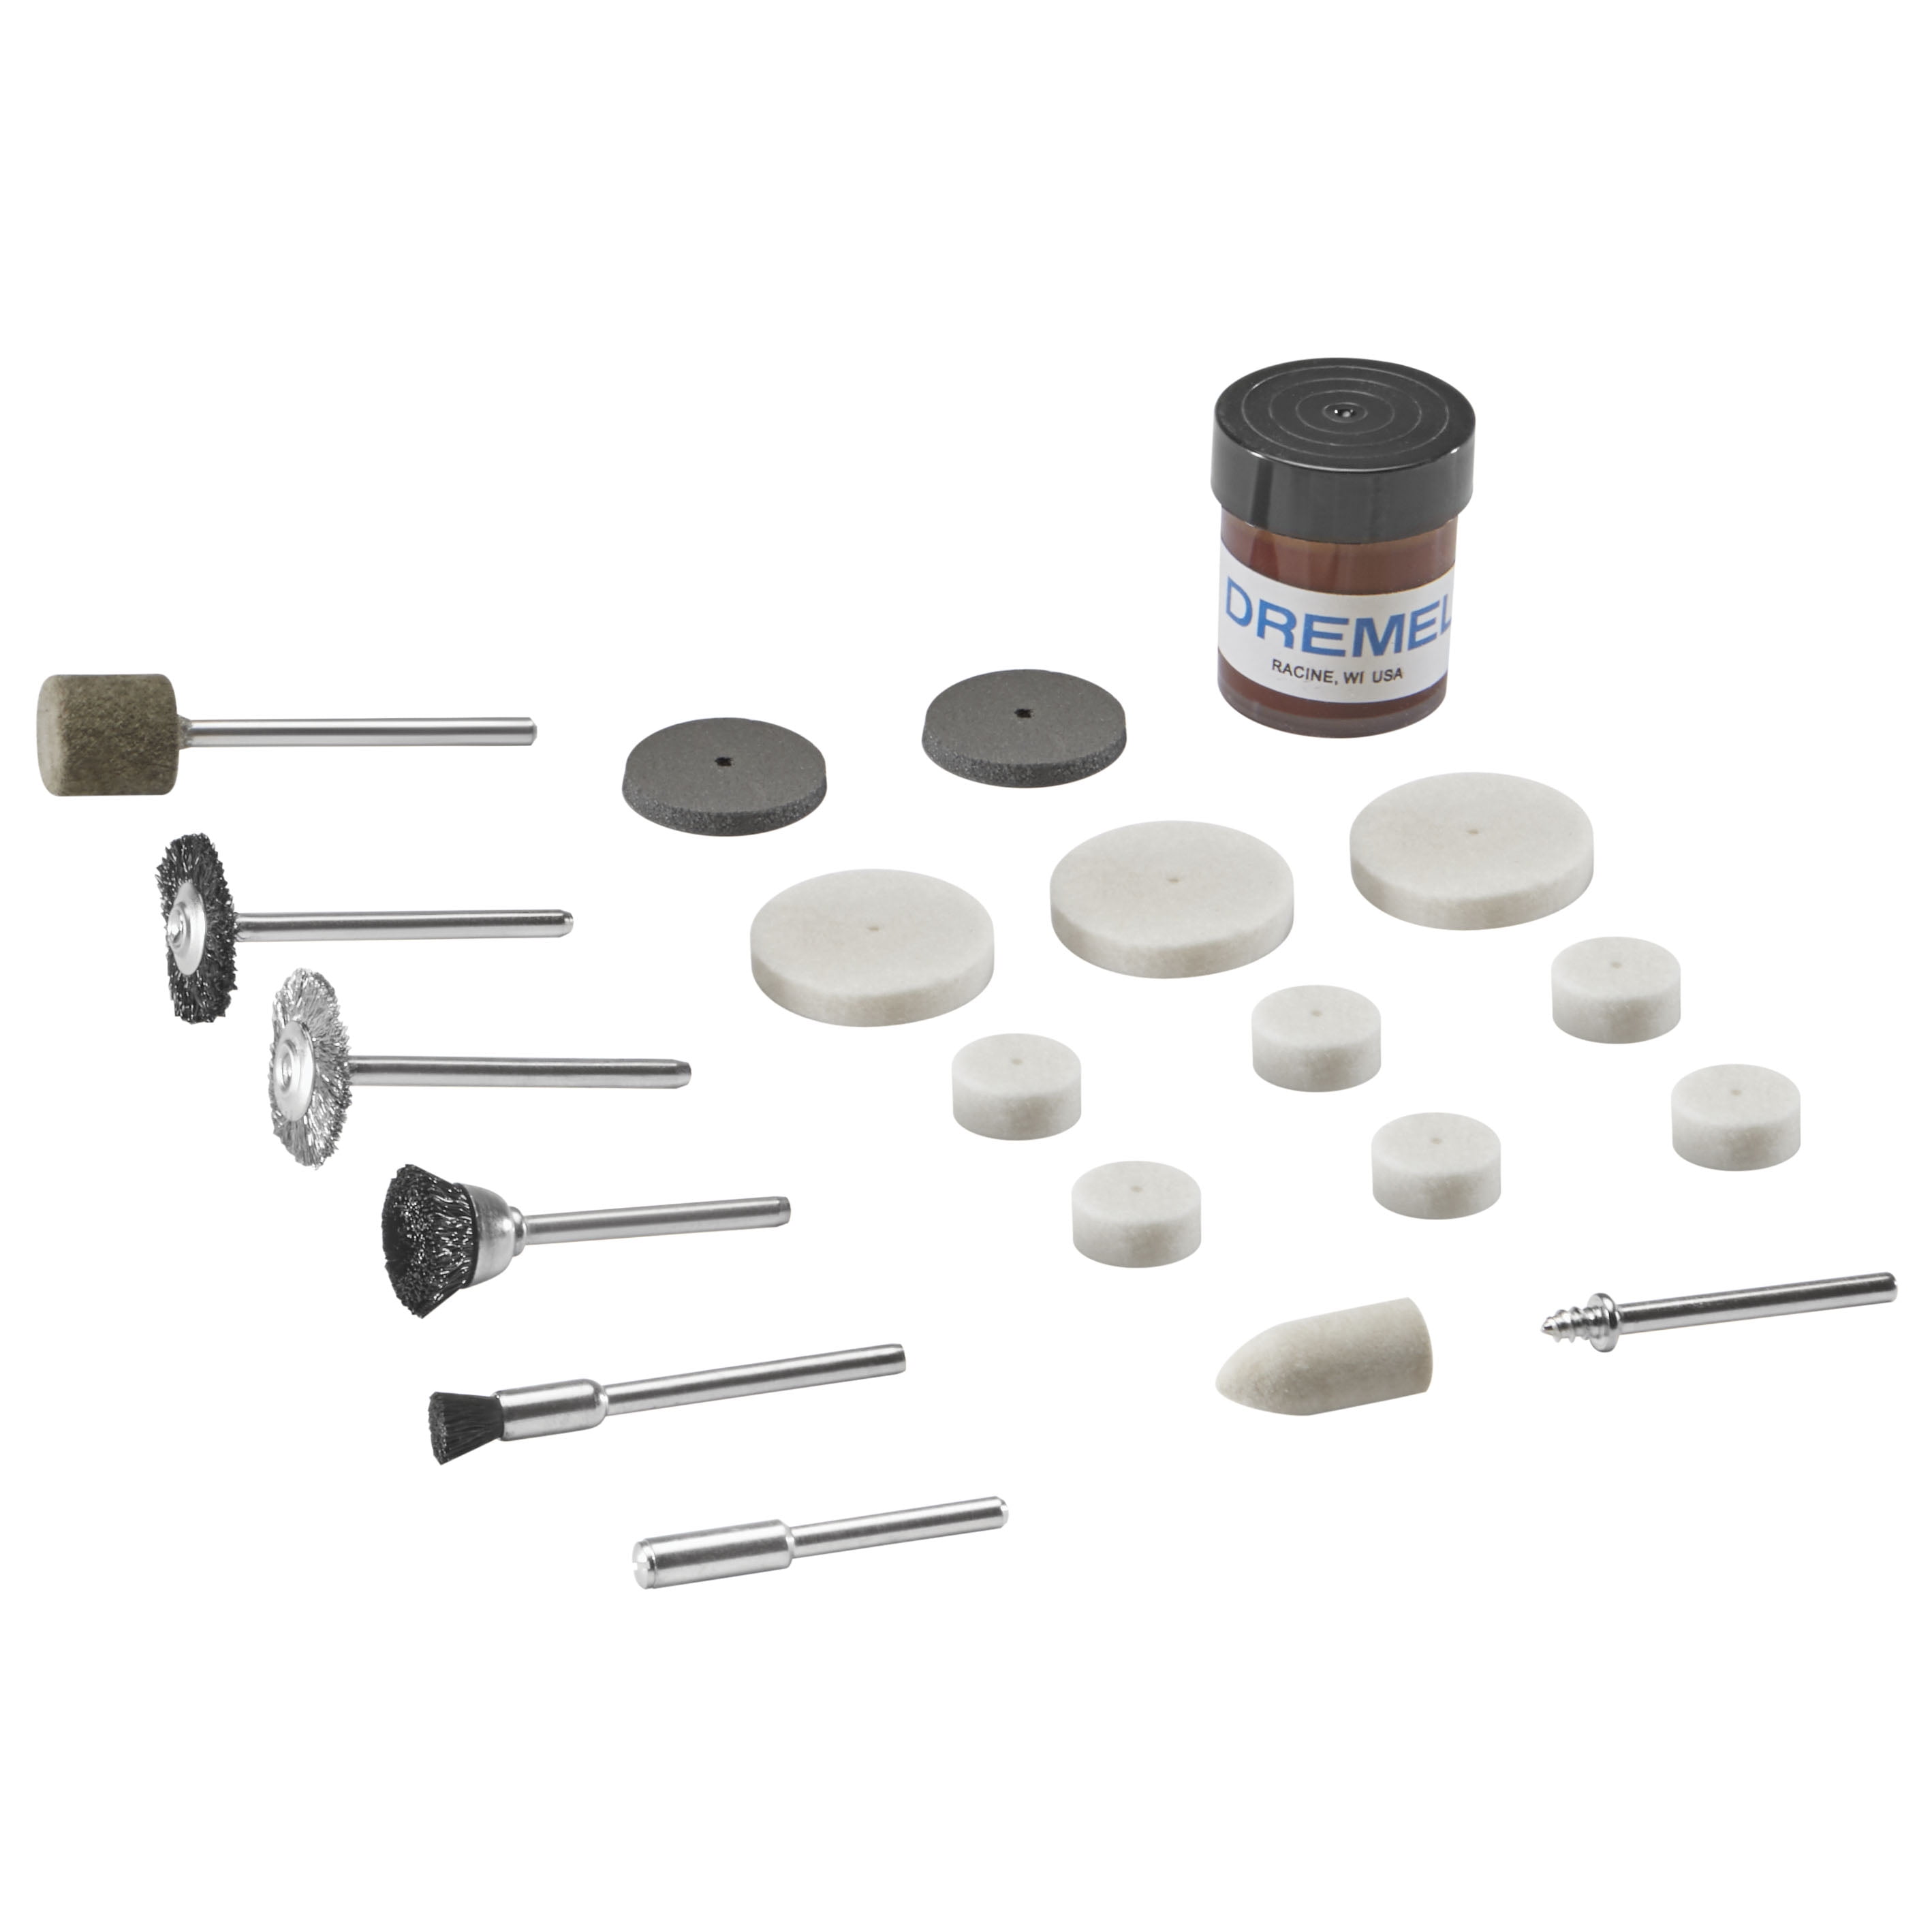 Buy Dremel 26150684JA Cleaning//polishing kit 20pcs. 1 Set